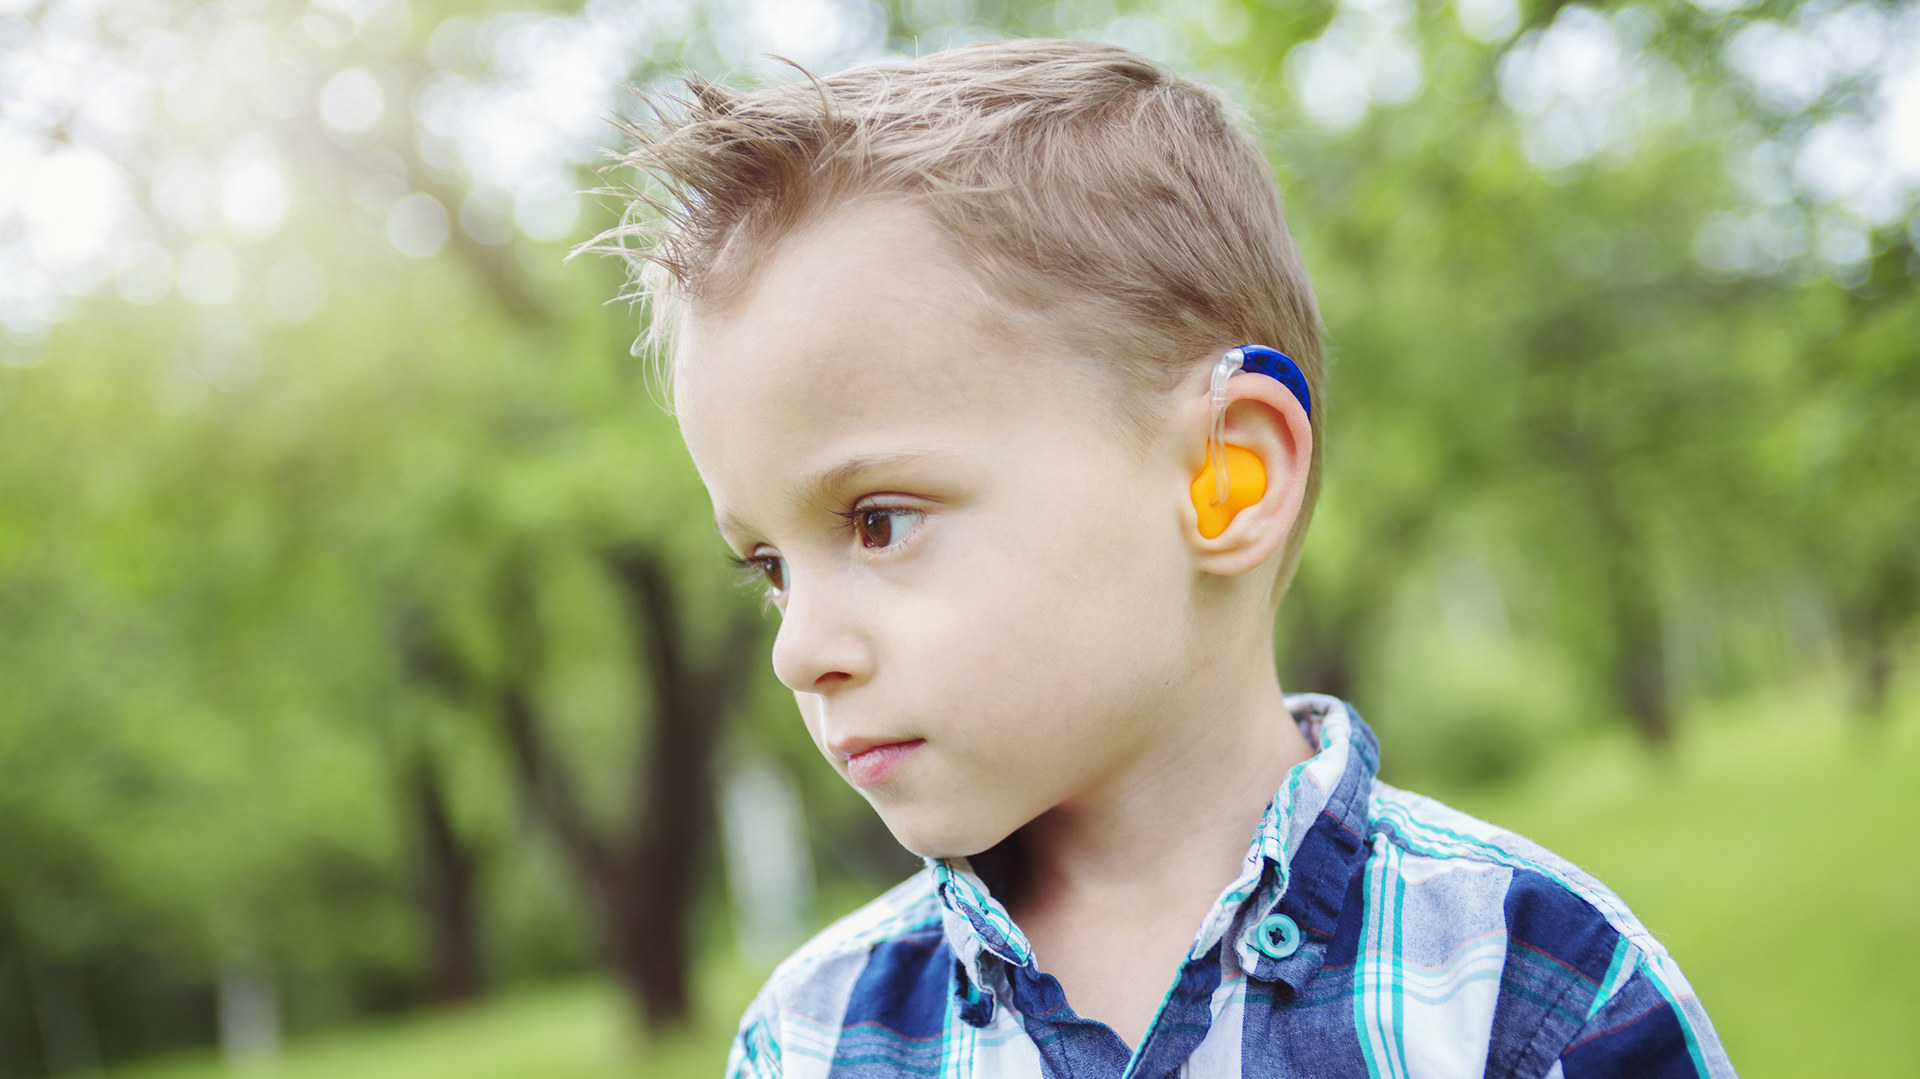 Se conocen más de 400 síndromes que incluyen pérdida auditiva
(Getty)